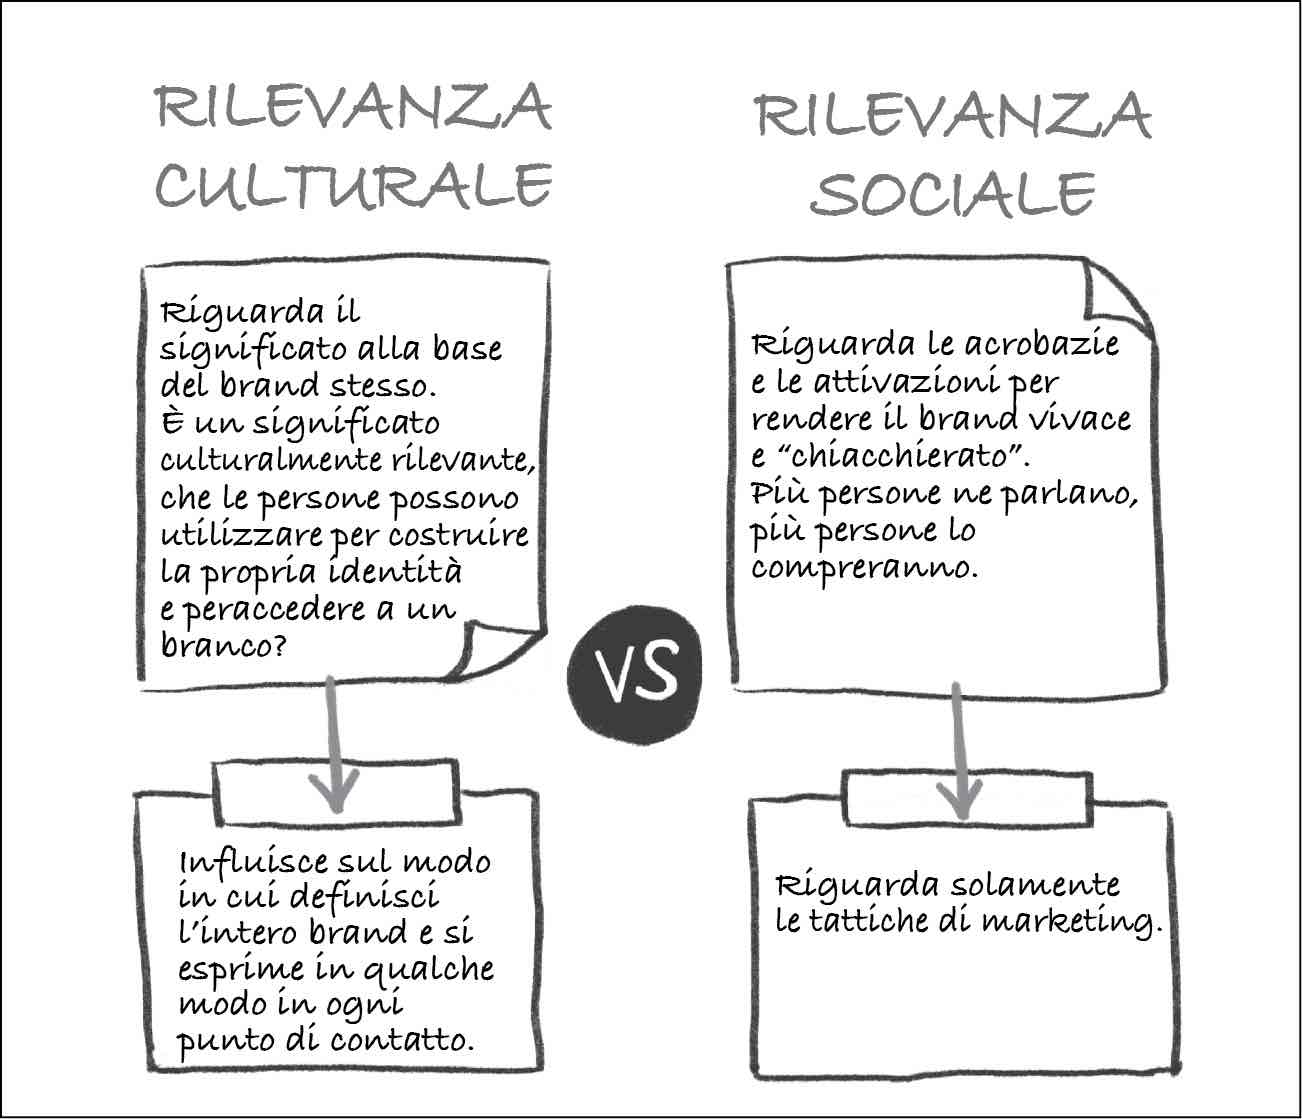 Rilevanza culturale e rilevanza sociale